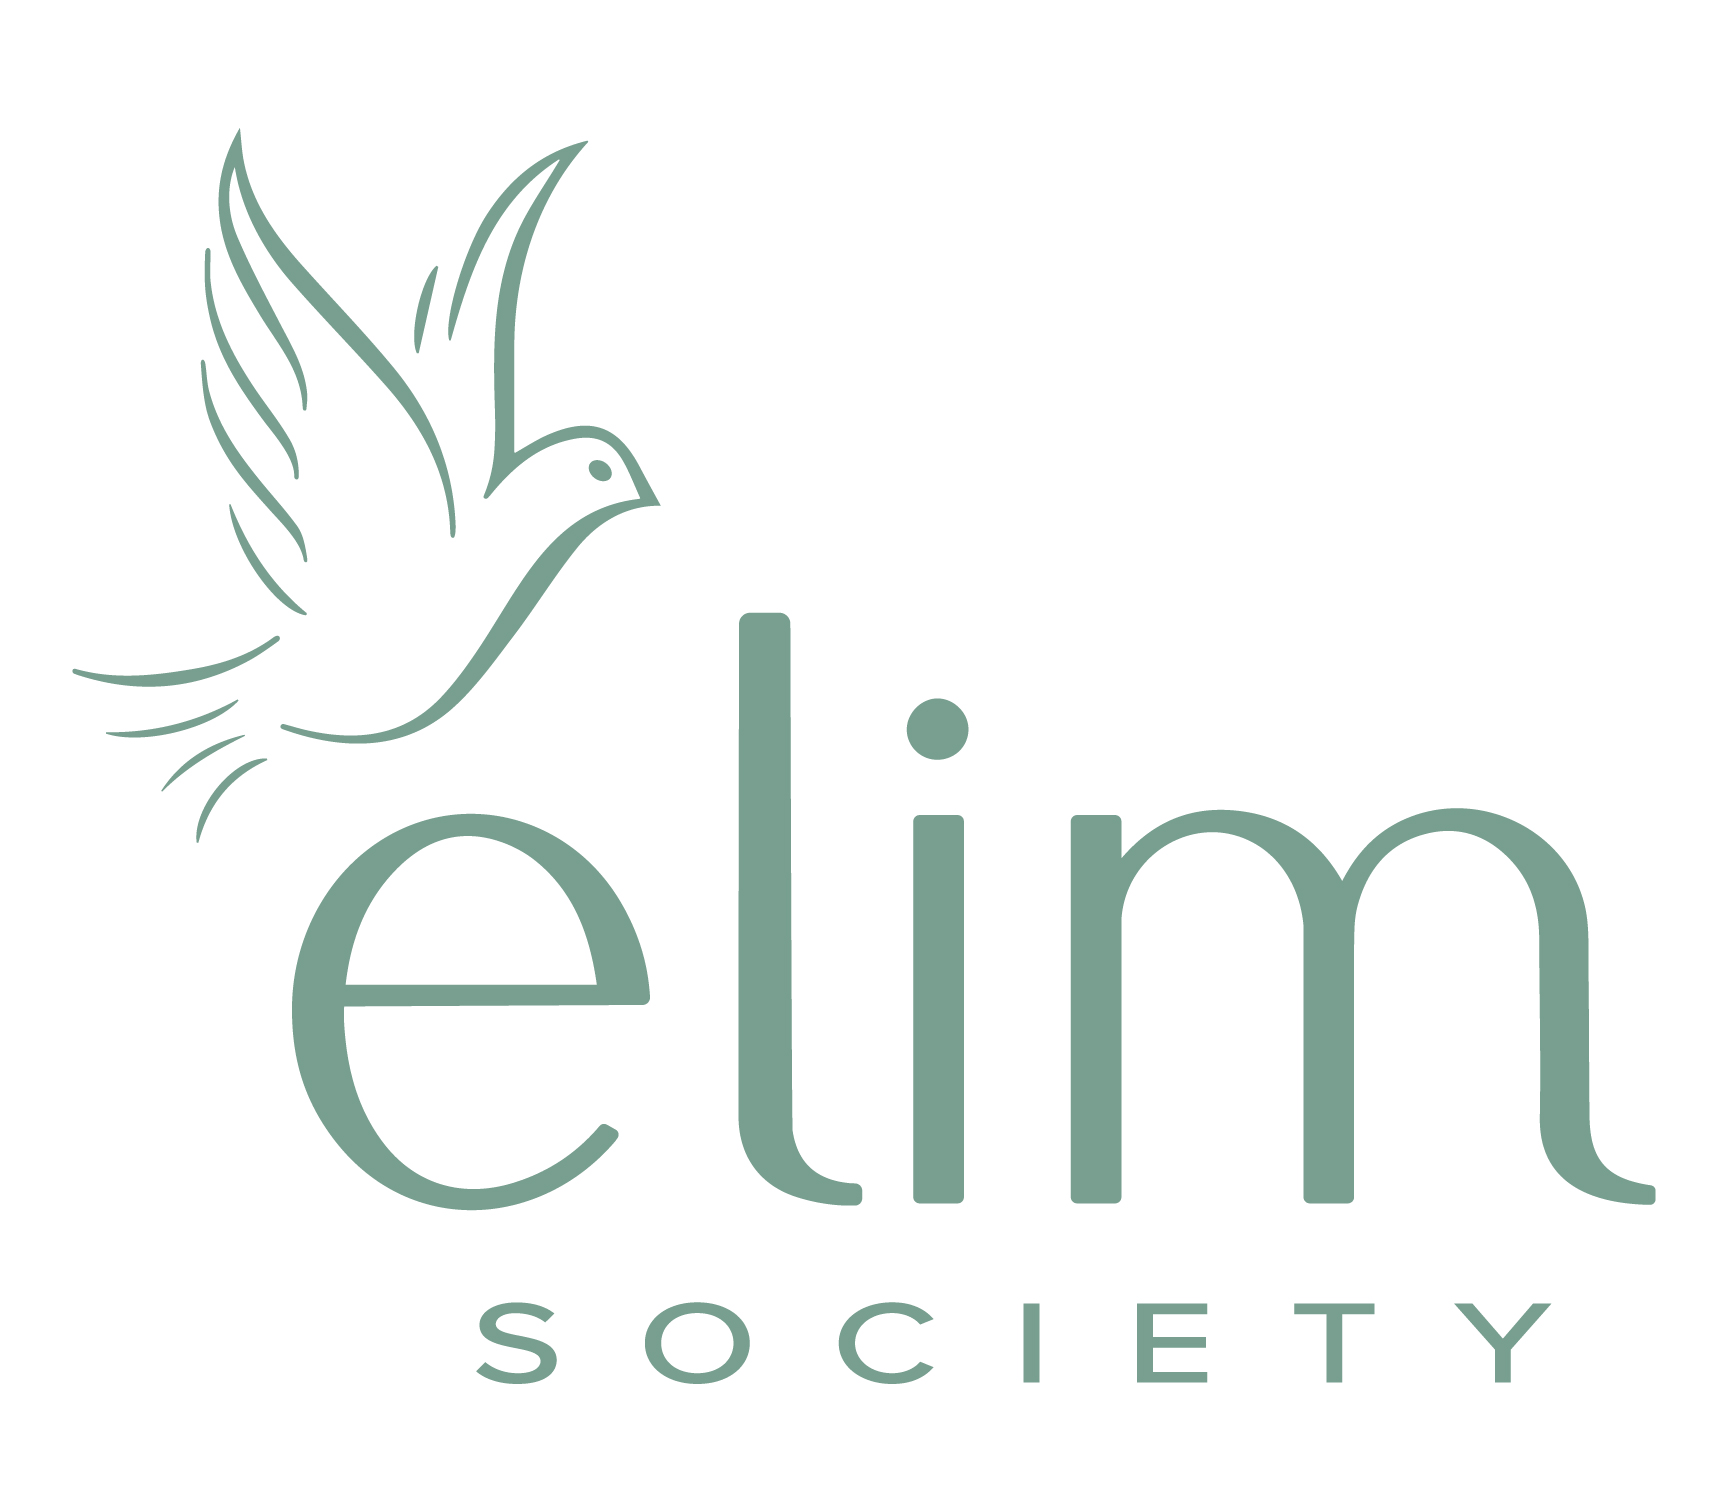 Elim Society for Seniors Care logo